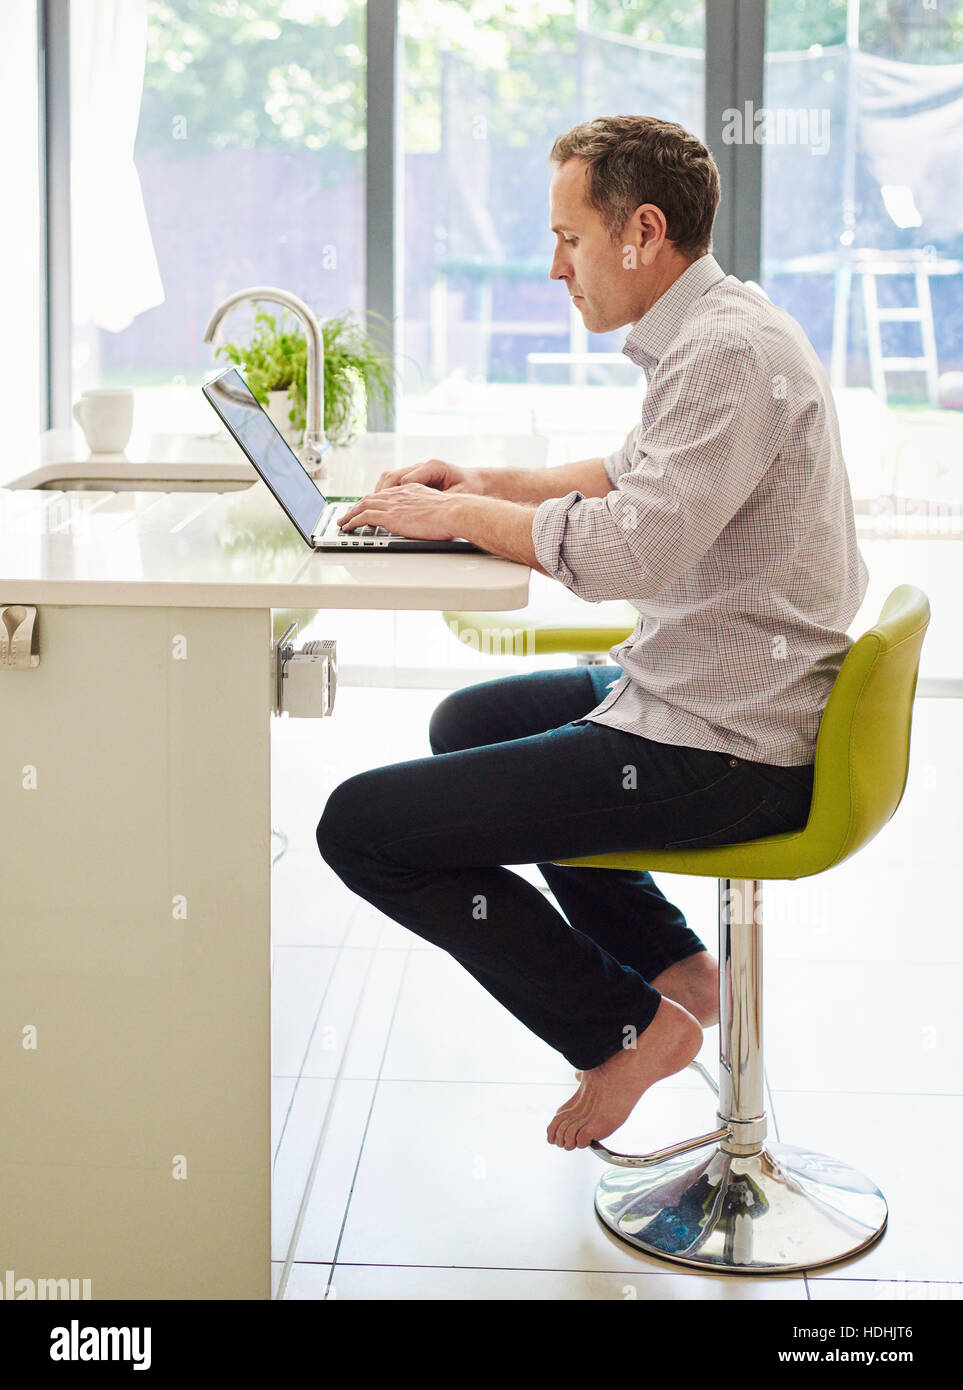 Un homme assis sur une chaise de cuisine au comptoir, à l'aide d'un ordinateur portable. Banque D'Images